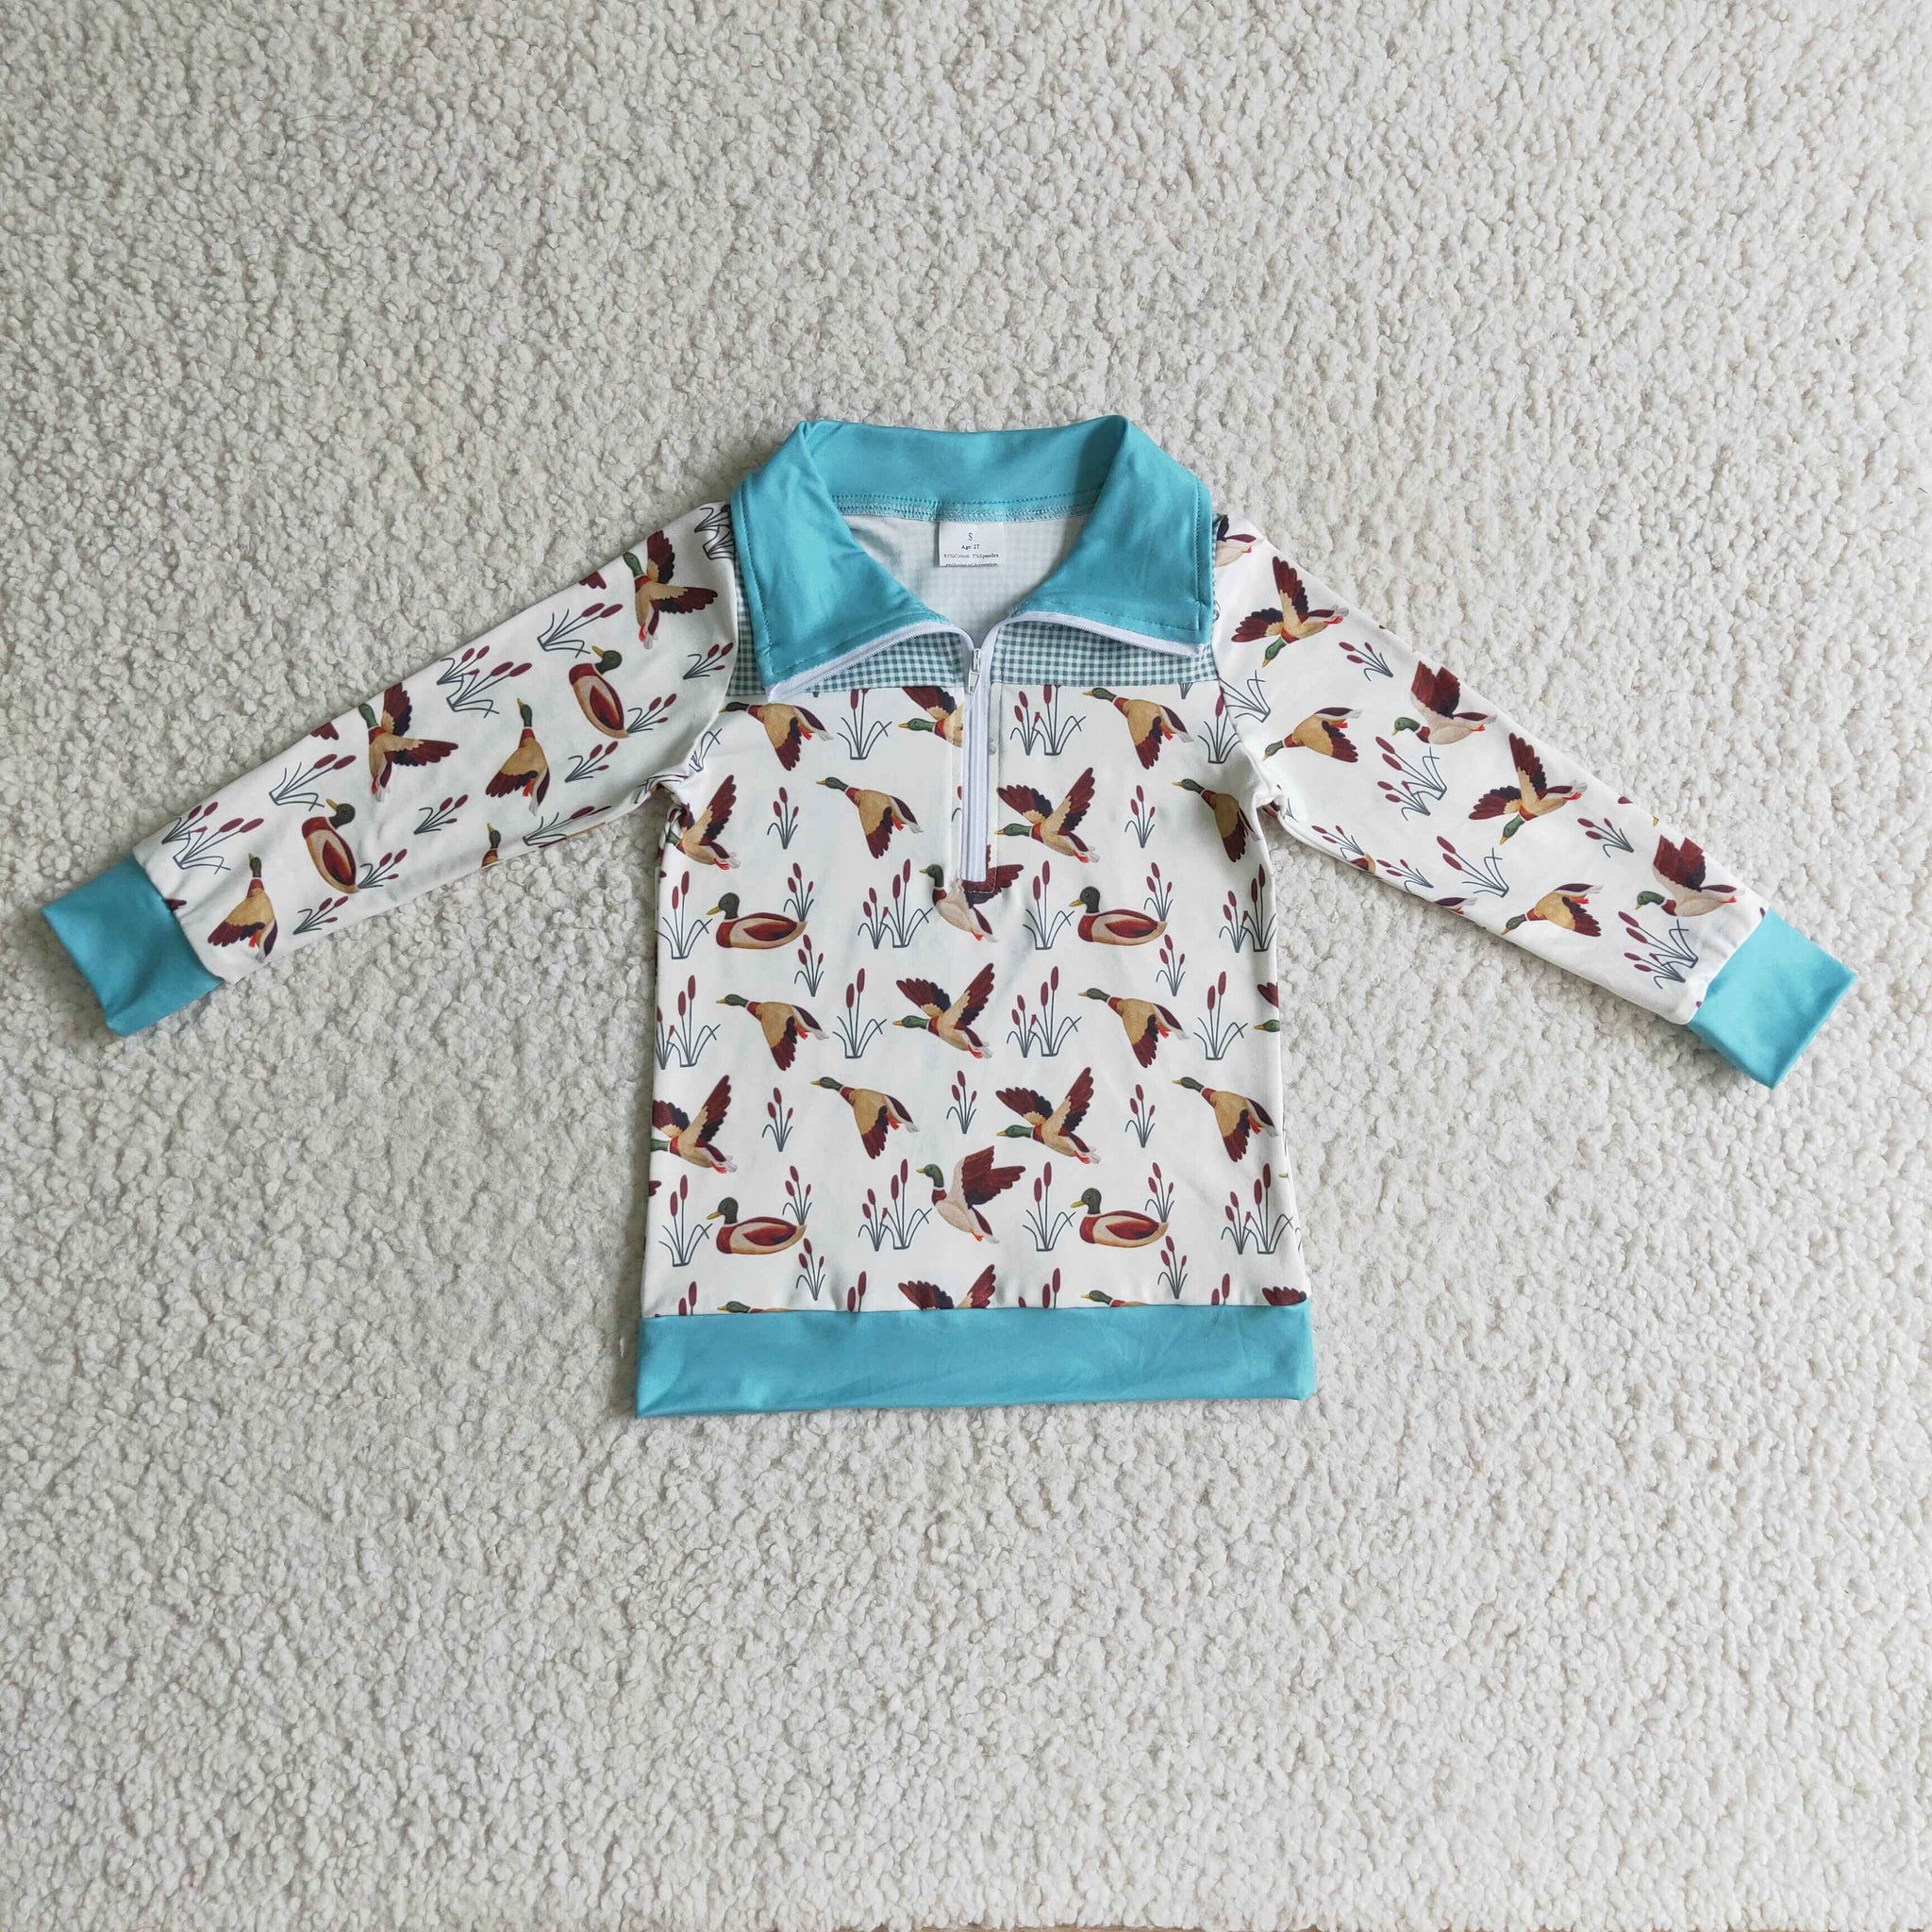 BT0095 baby boy clothes bird winter zipper top